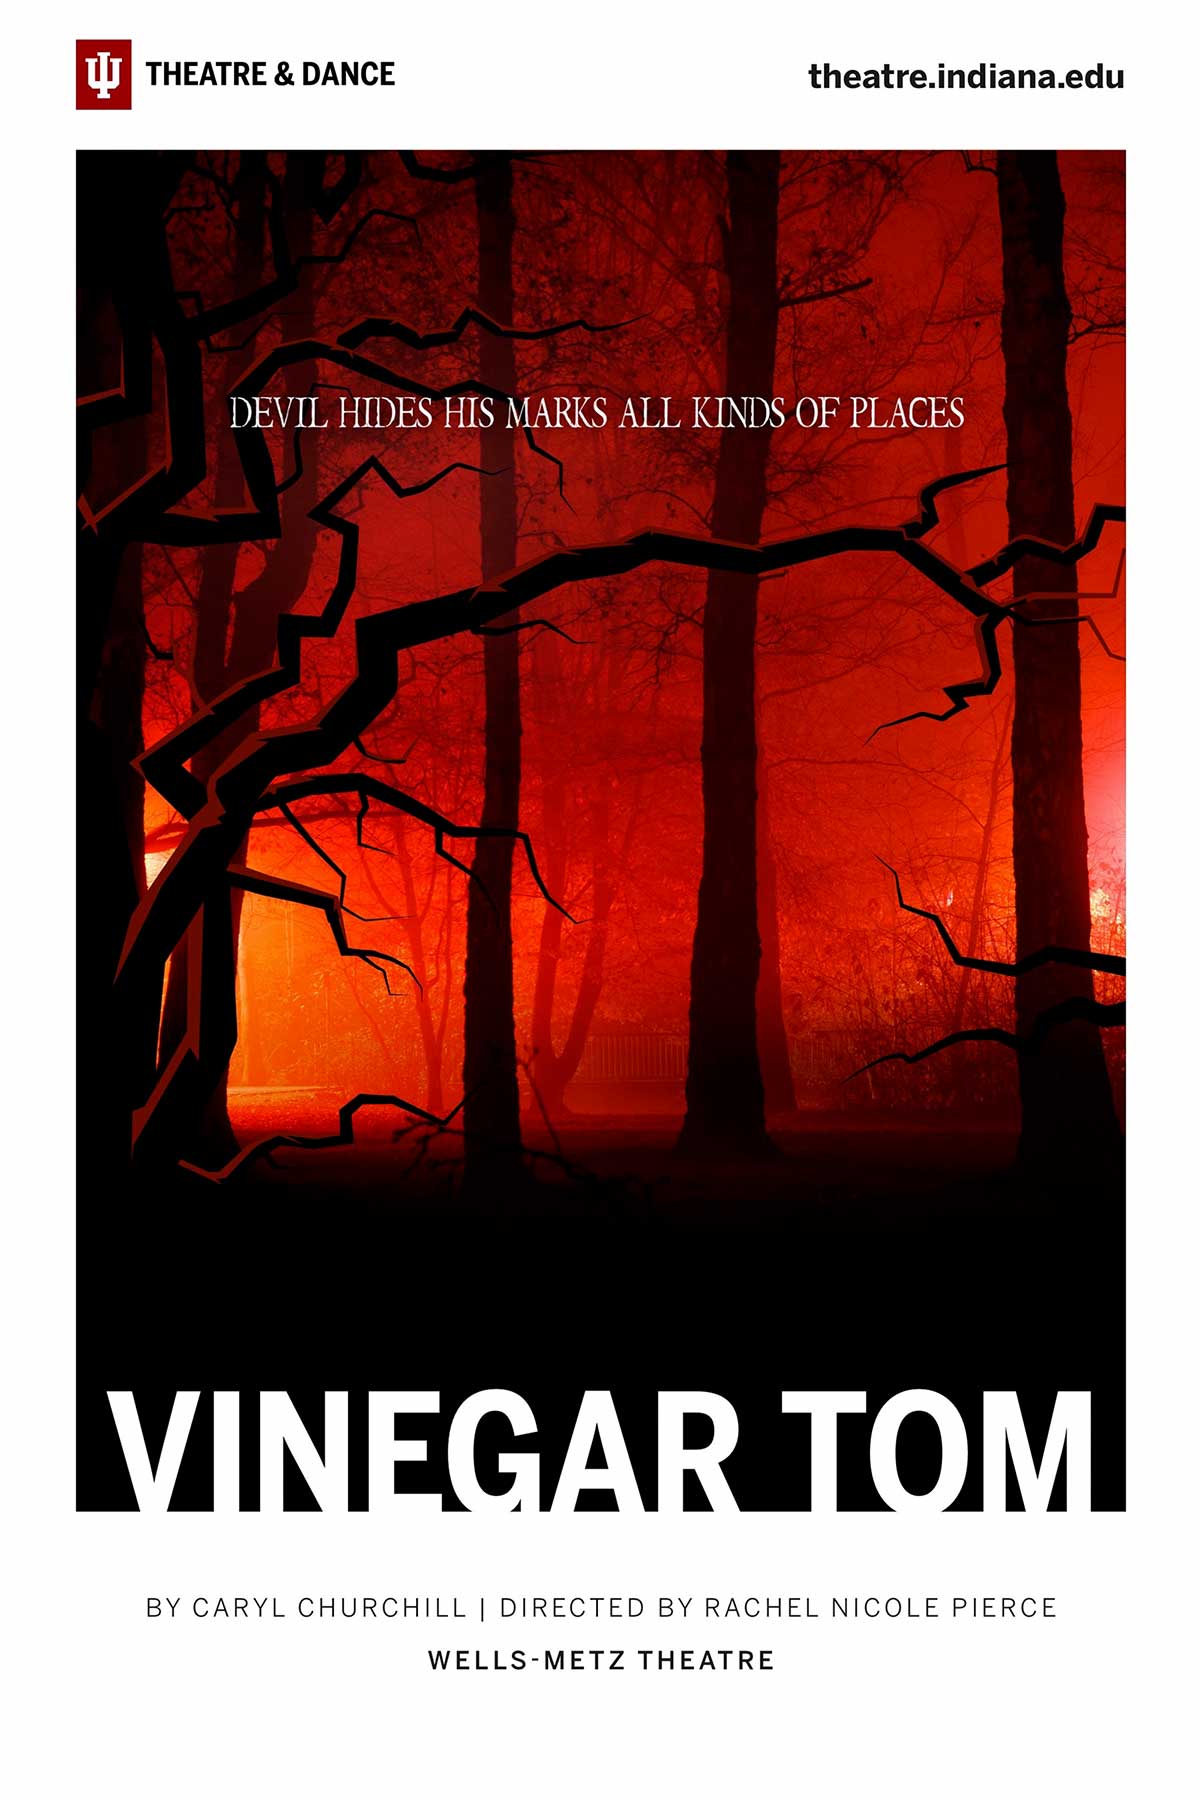 Vinegar Tom Program